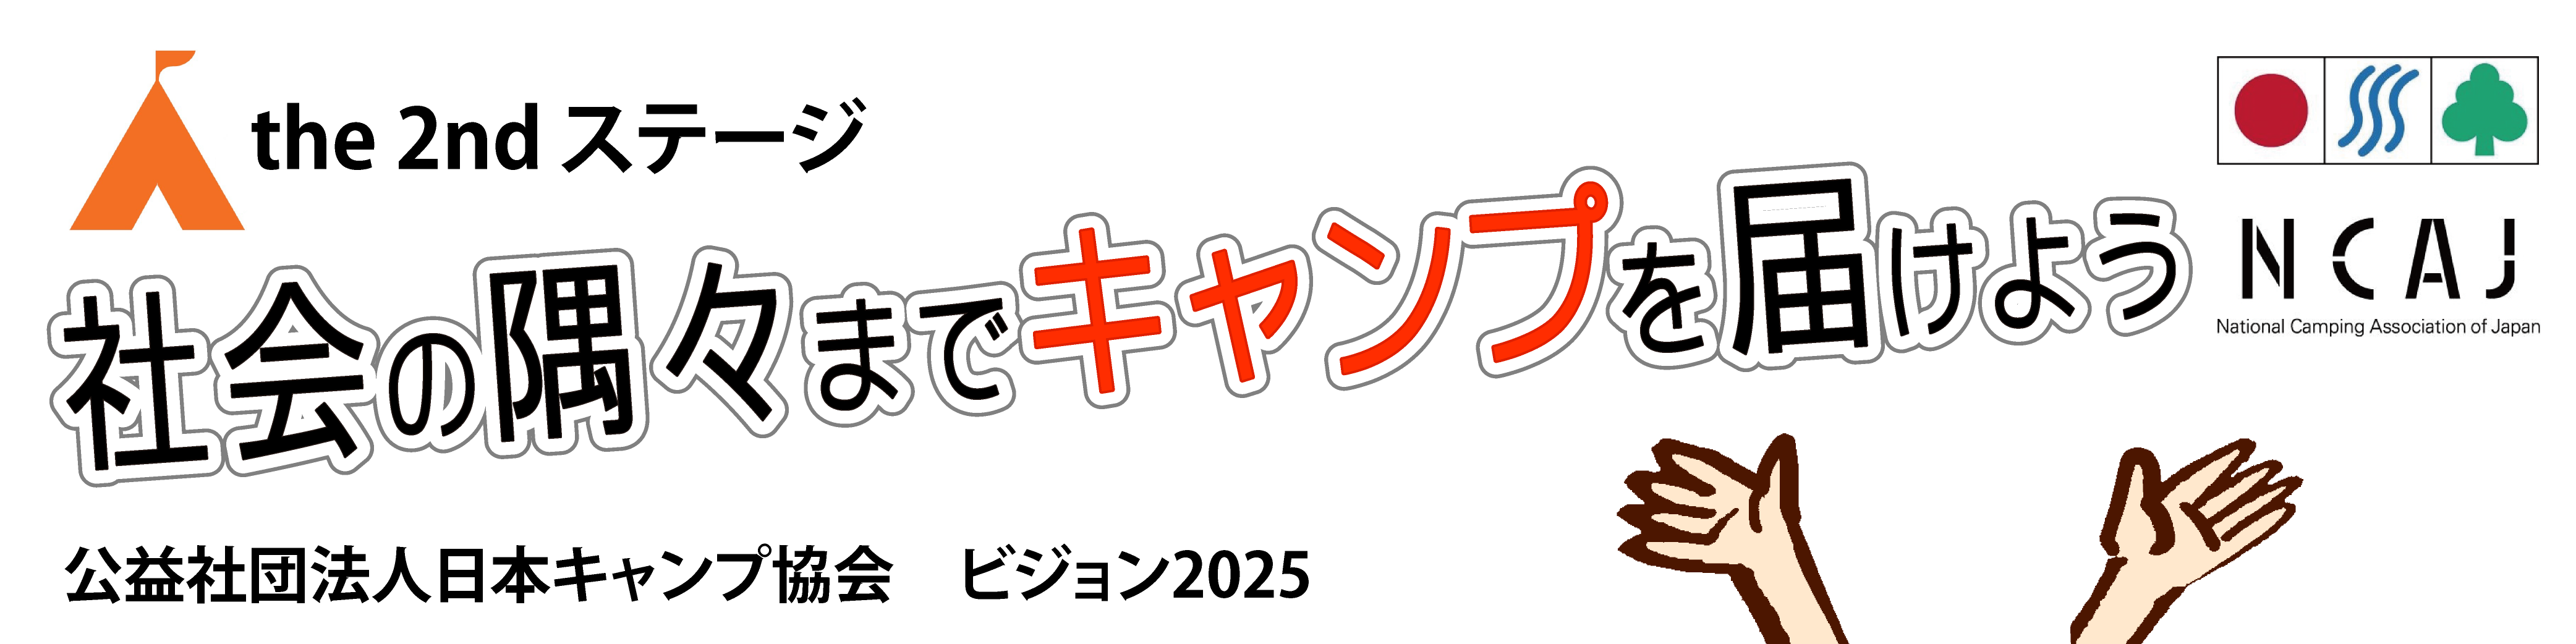 「ビジョン2025」横長型_推進ロゴ